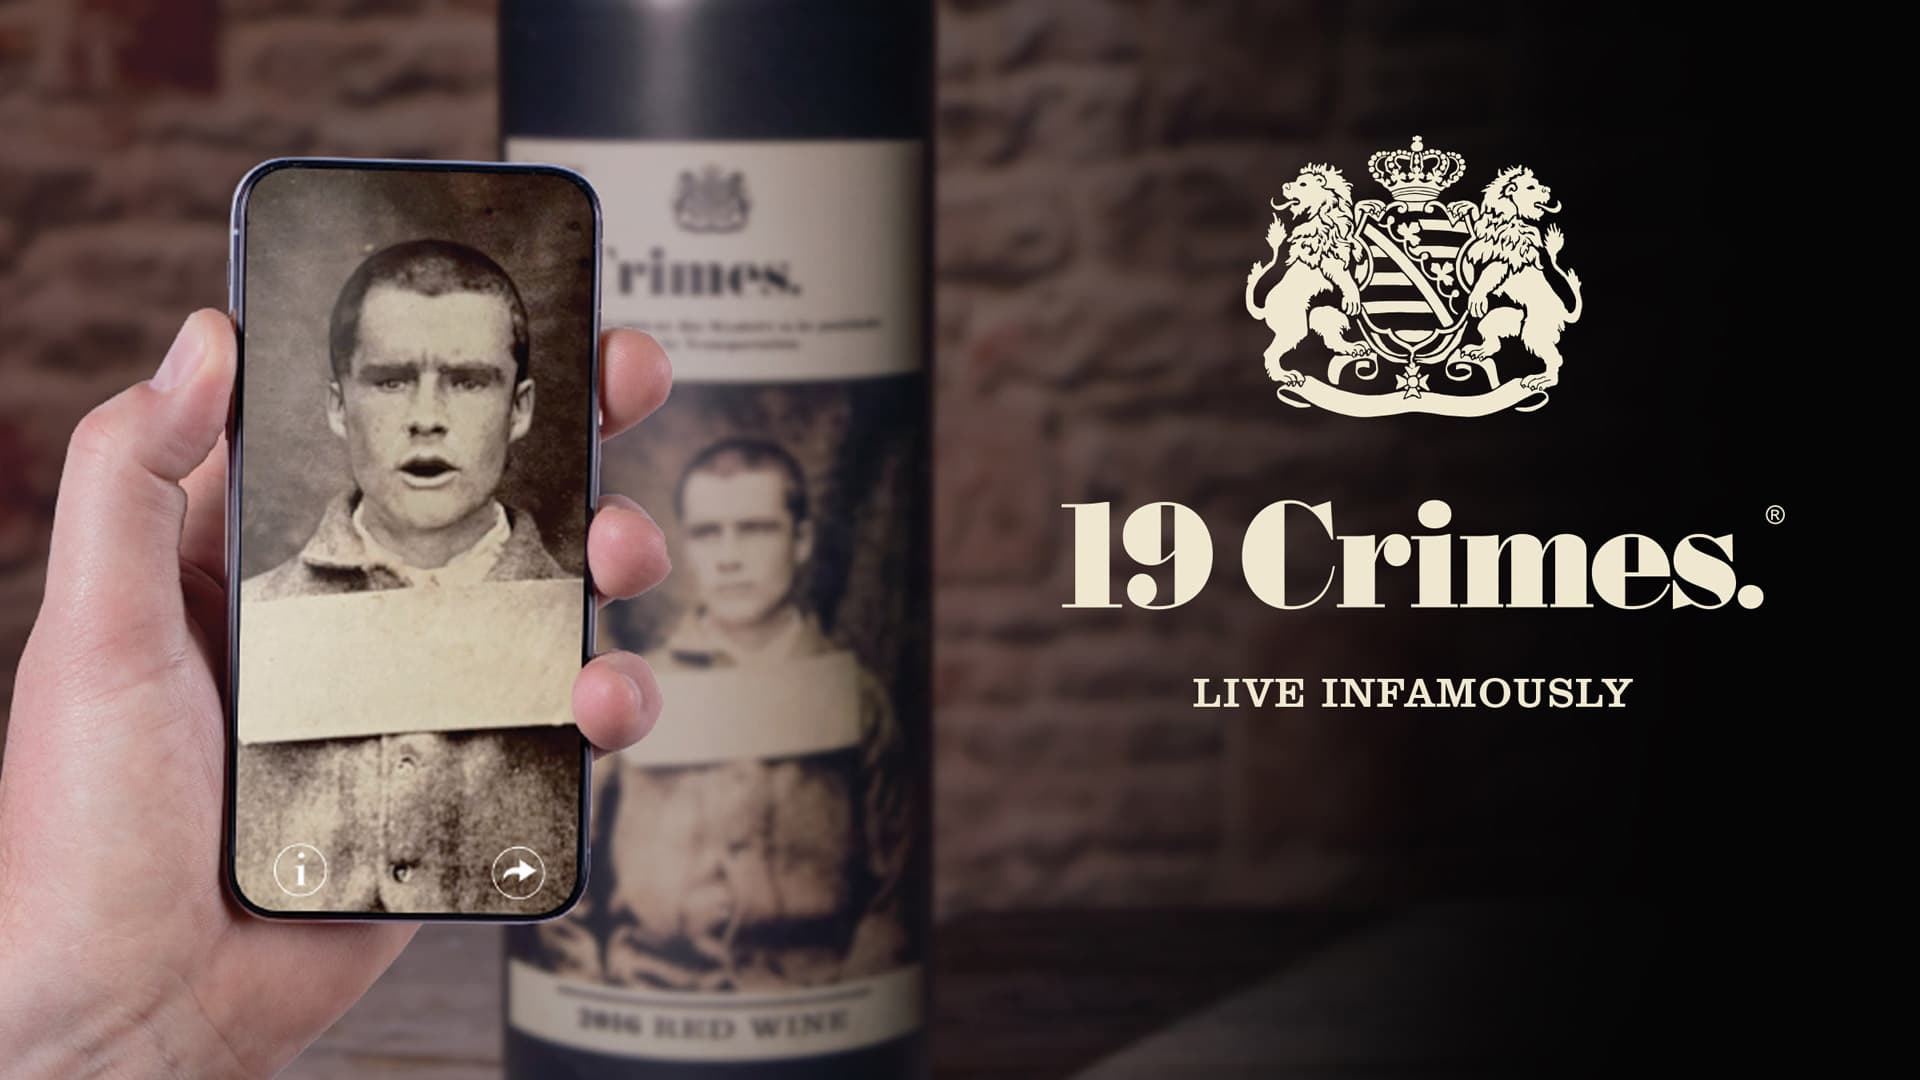 Utilisation de la réalité augmentée sur les vins australiens 19 Crimes de Treasury Wines